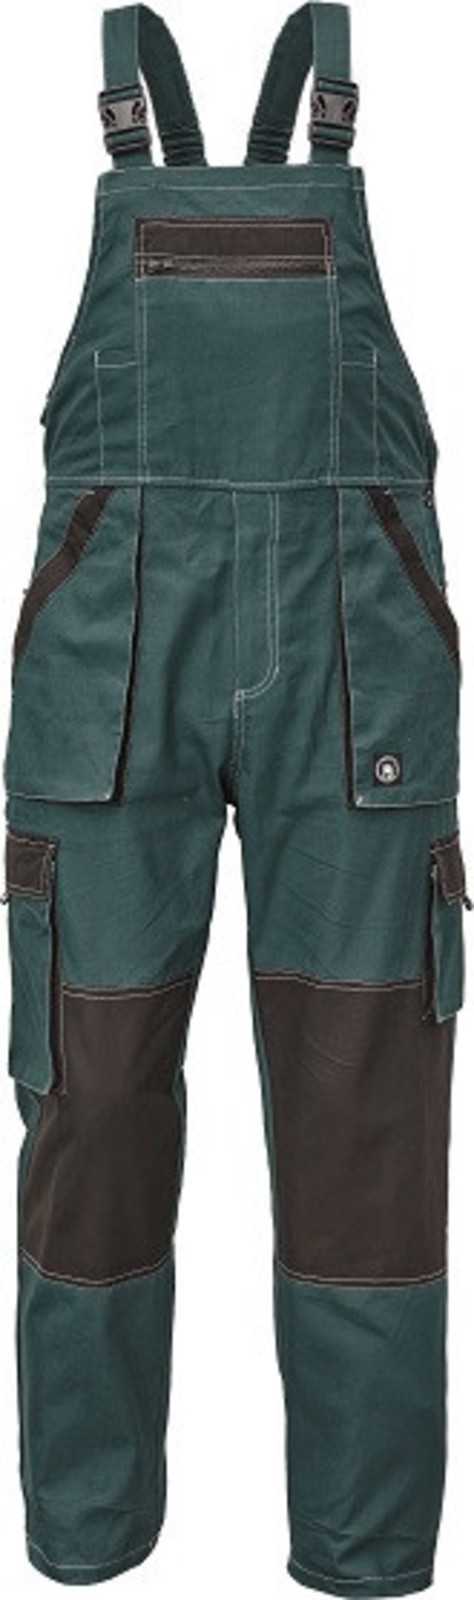 Tenšie bavlnené montérky na traky Max Summer - veľkosť: 46, farba: zelená/čierna